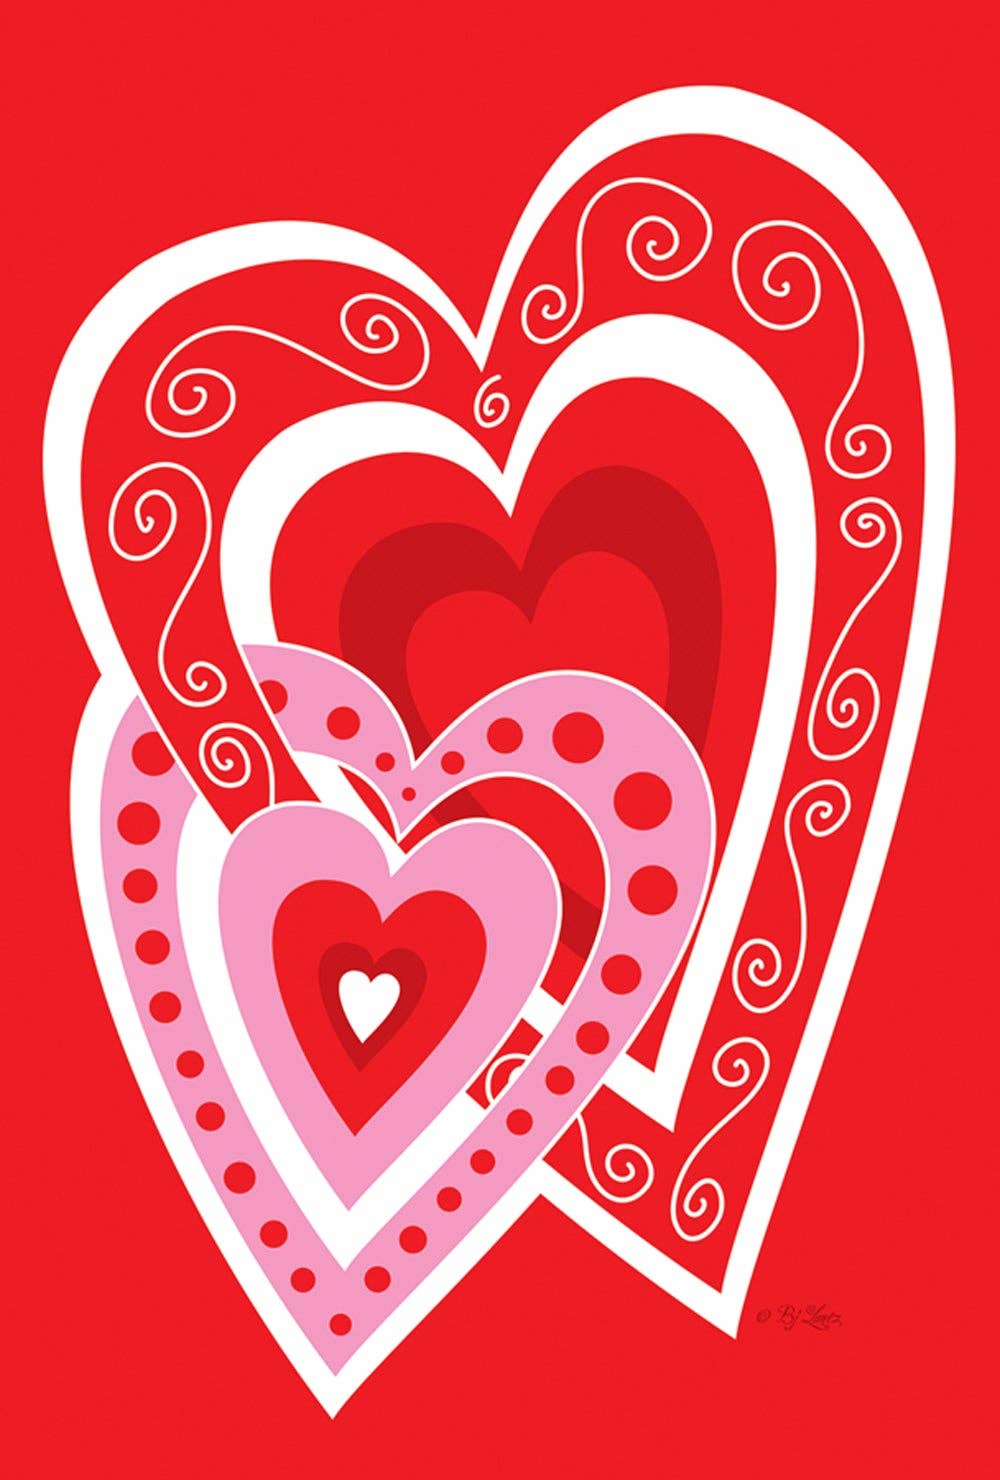 Heart by Heart Valentine Garden Flag